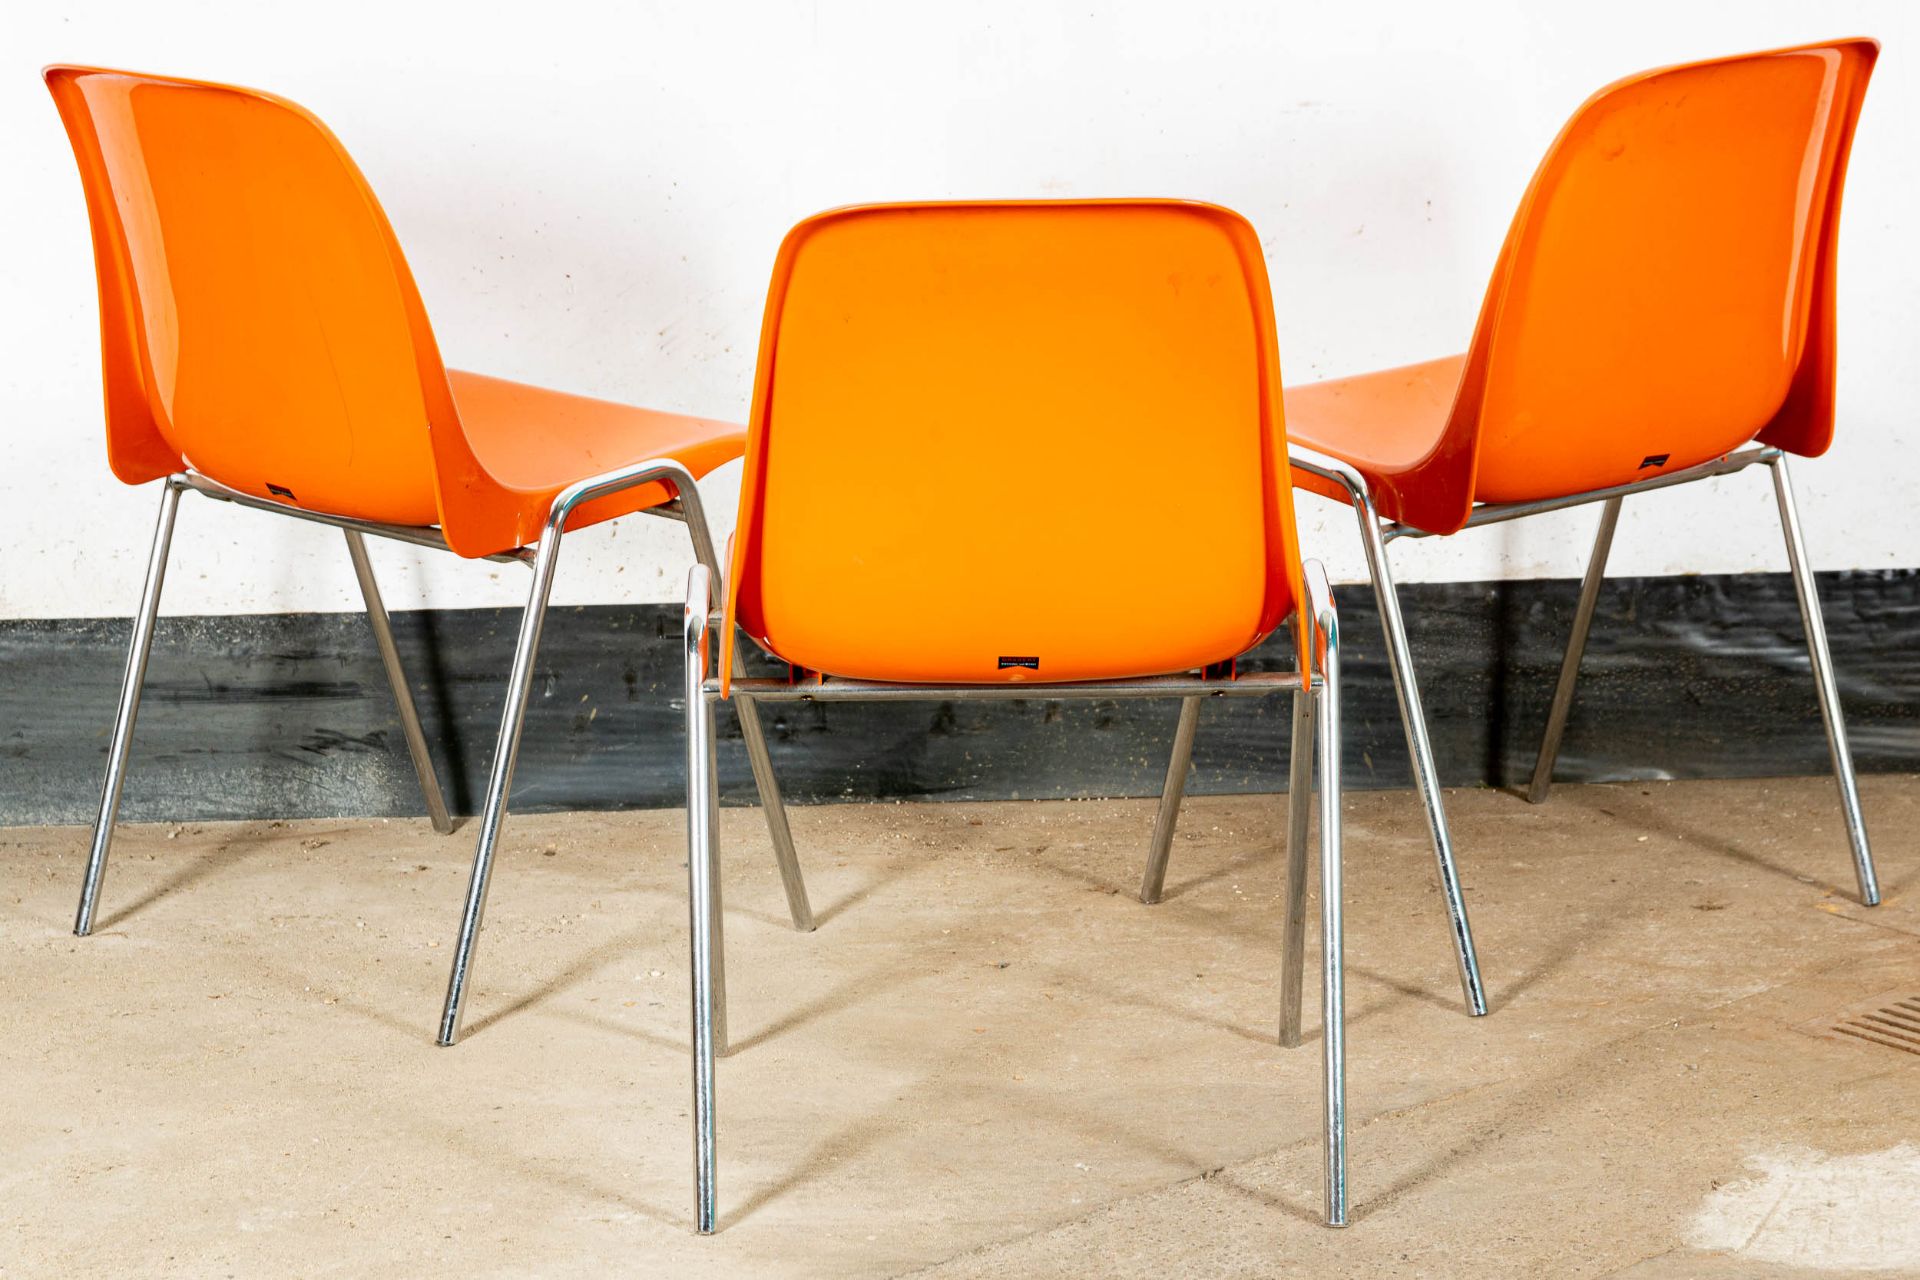 Folge von 3 Stapelstühlen der Marke "DRABERT", orange Kunststoffsitze, 1970er Jahre, verchromte Ges - Bild 5 aus 7